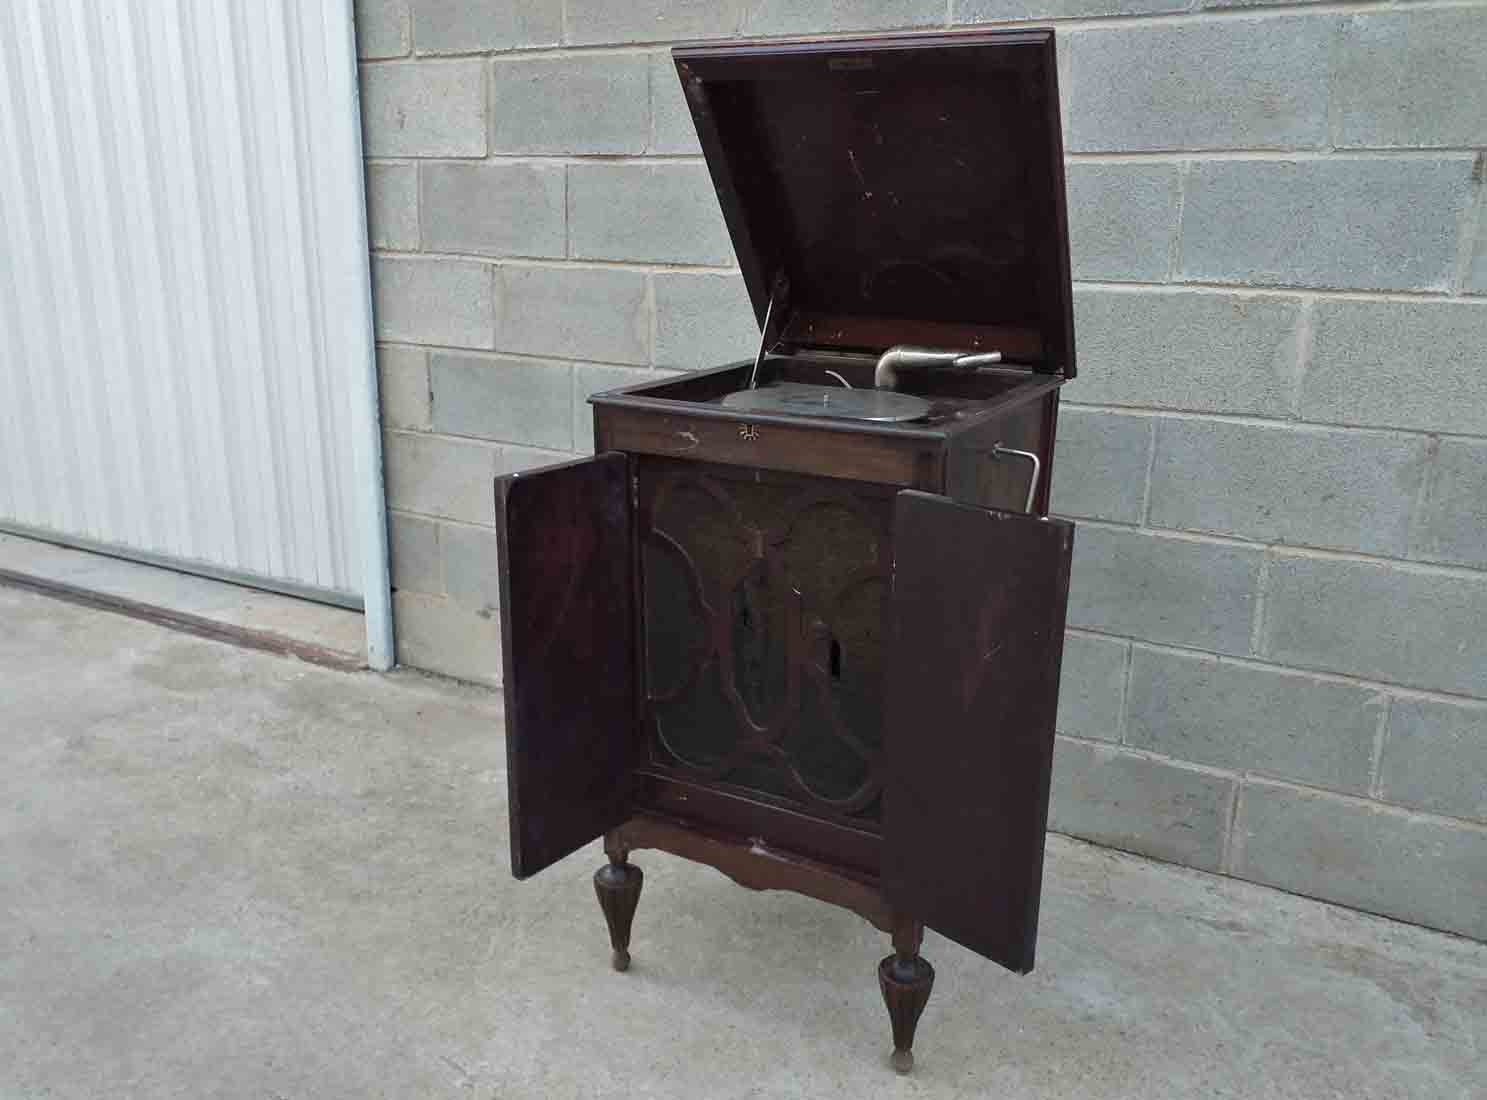 Mueble tocadiscos antiguo estilo art decó, para restaurar.